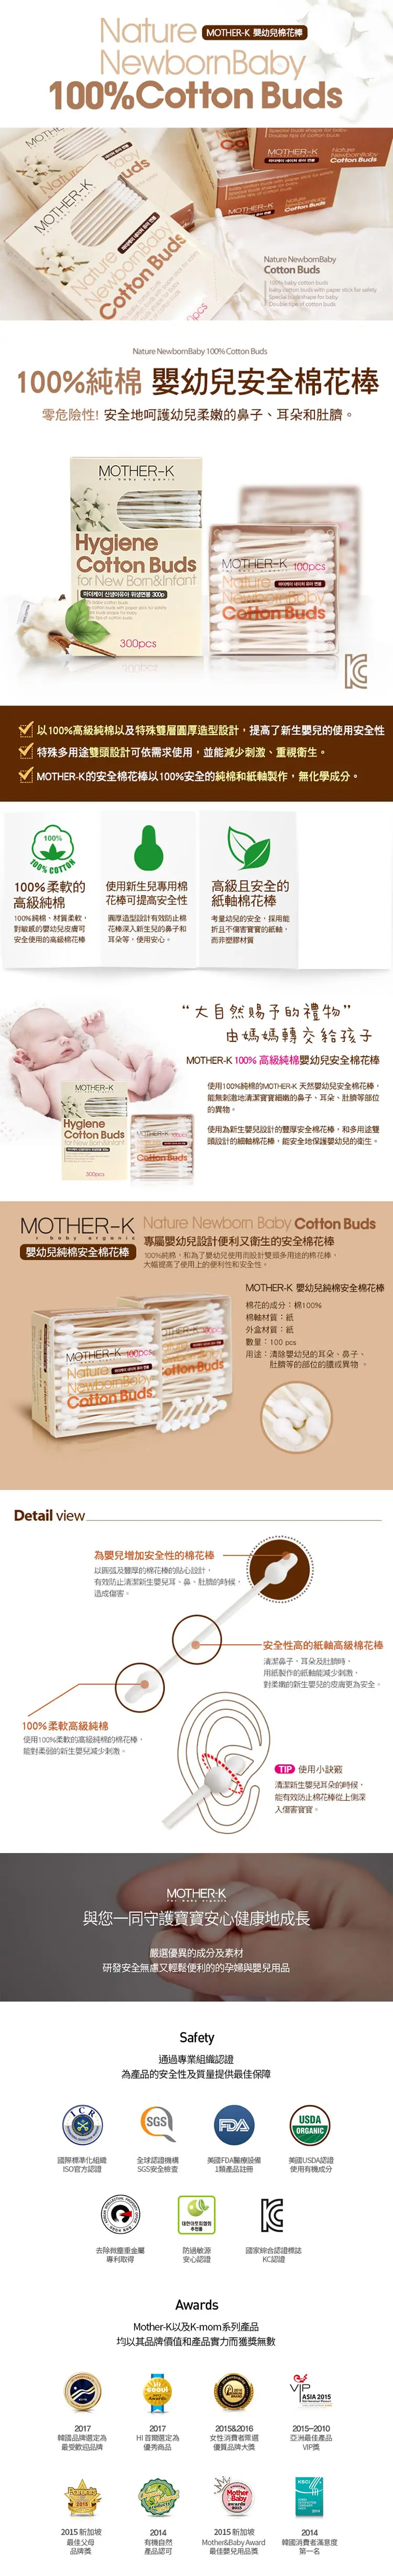 Mother-K 100%純棉安全幼兒棉棒-100pcs